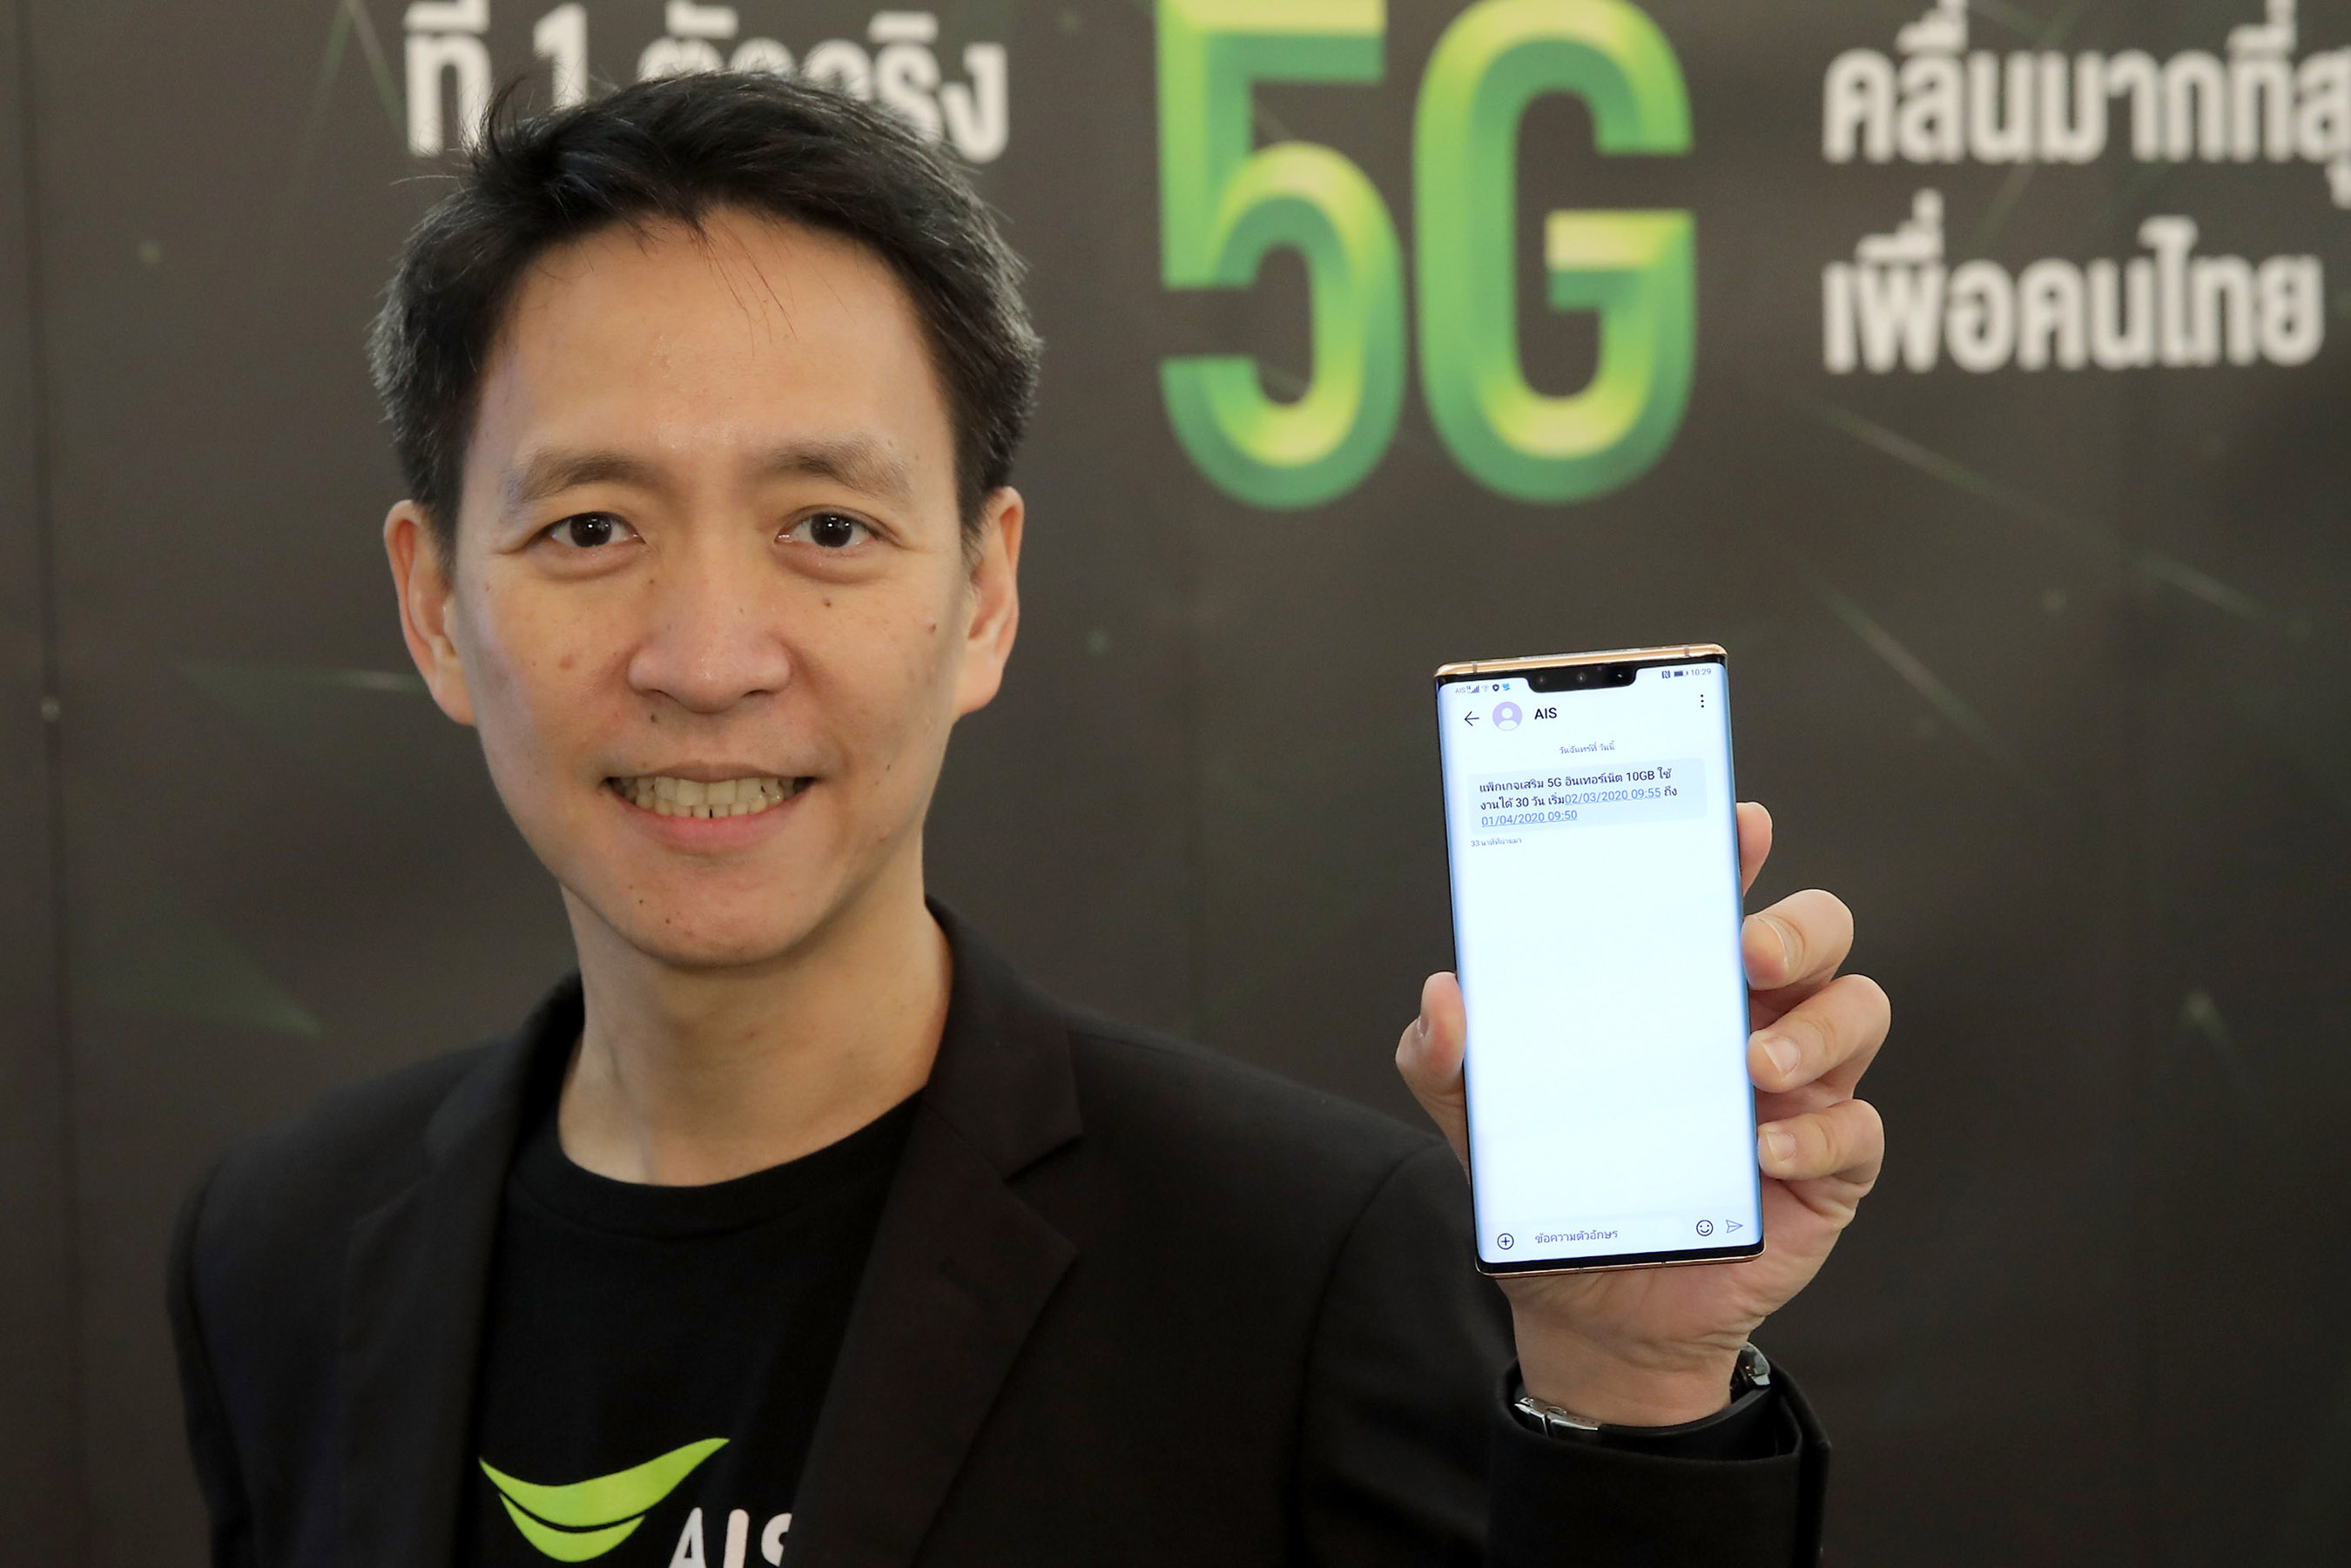 5G ใช้ได้แล้ว! ปักหมุดไทยเป็นประเทศแรกที่ให้บริการ 5G บนมือถือในเอเชียตะวันออกเฉียงใต้ได้สำเร็จ